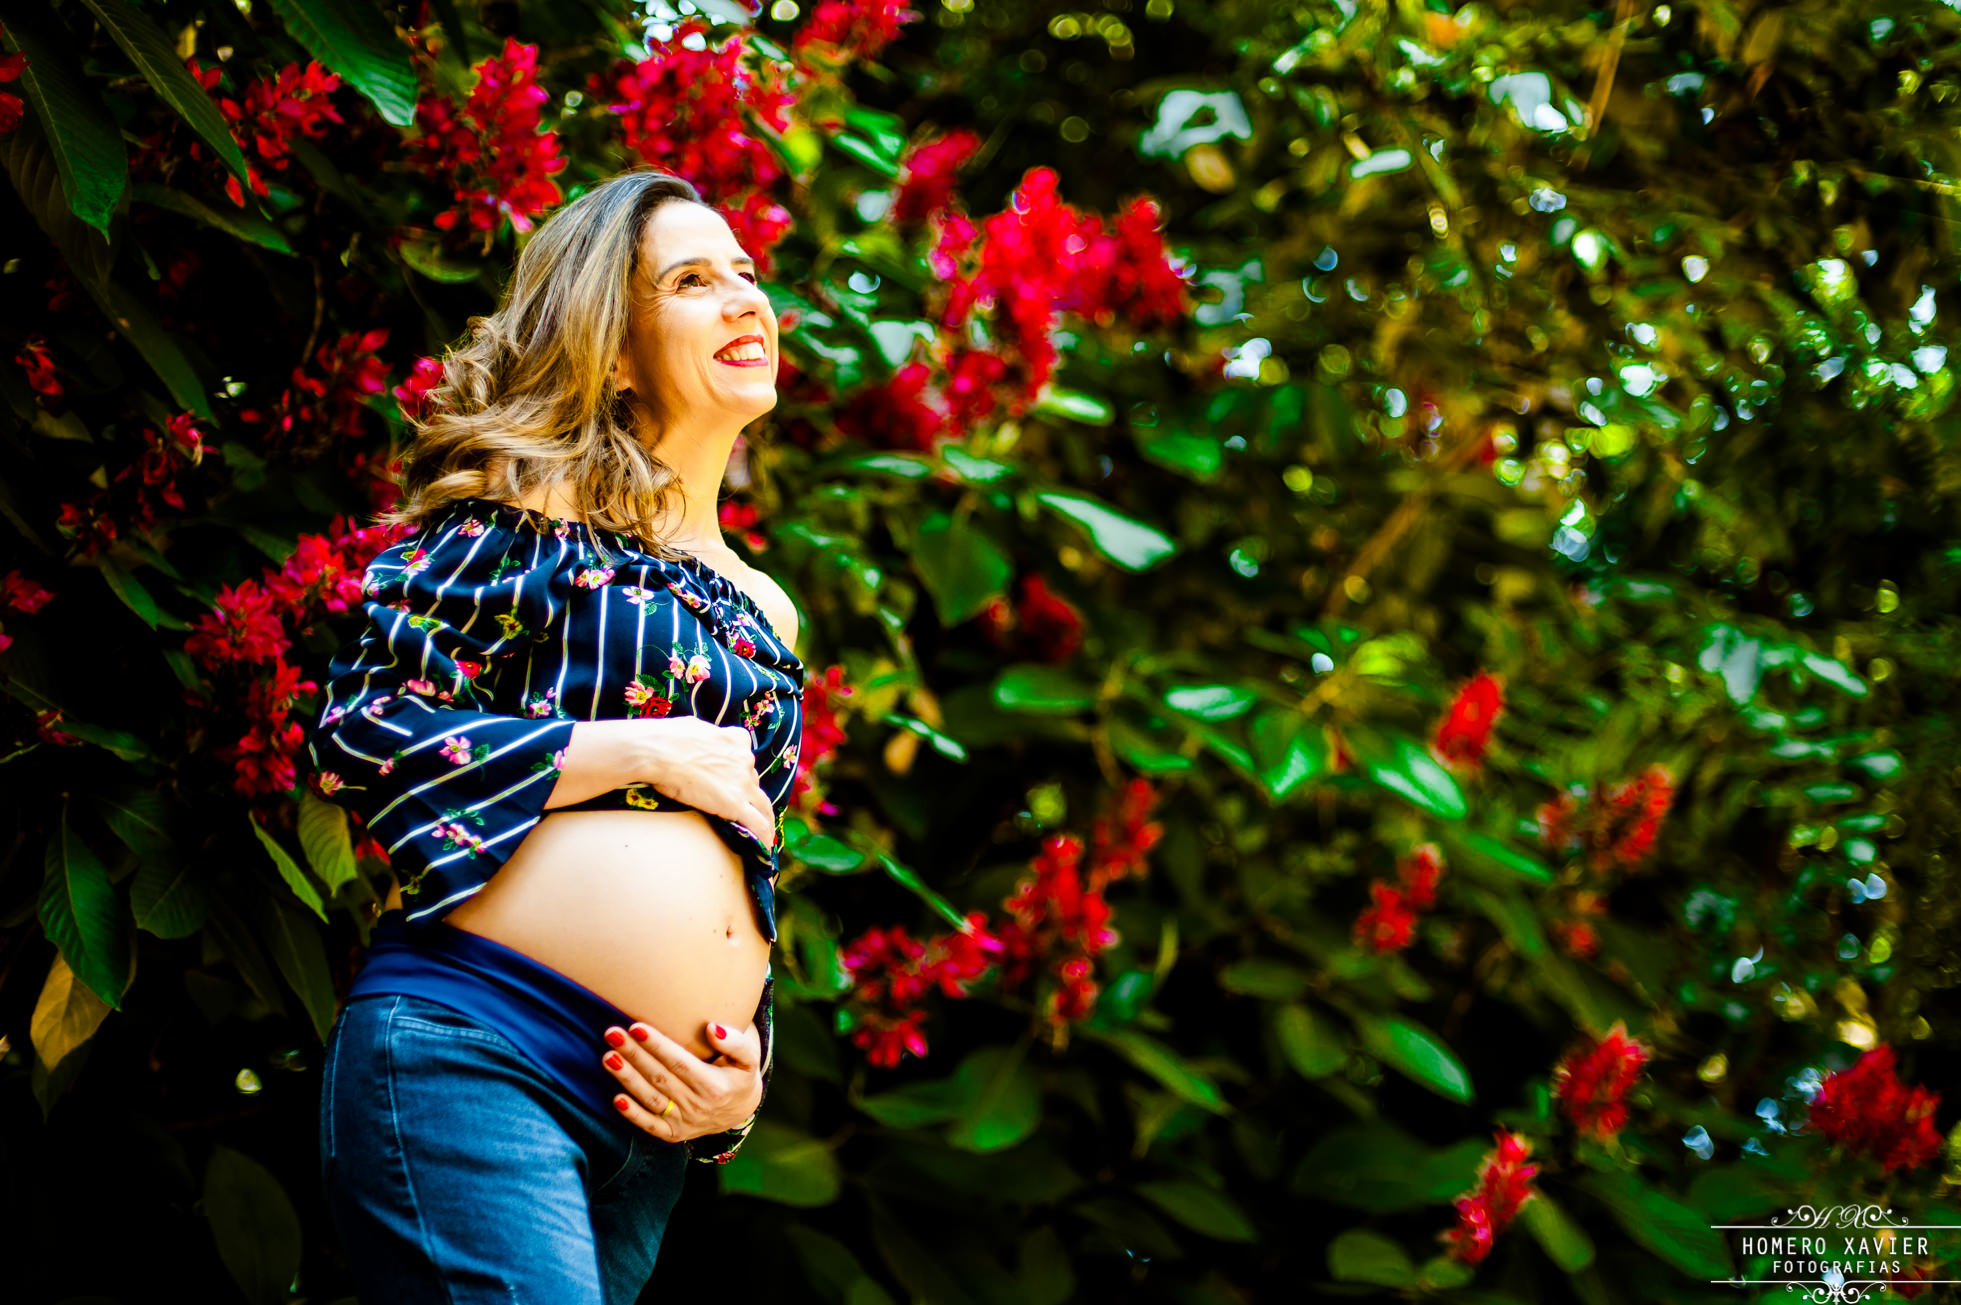 fotografia book gestante gravida em Parque em BH